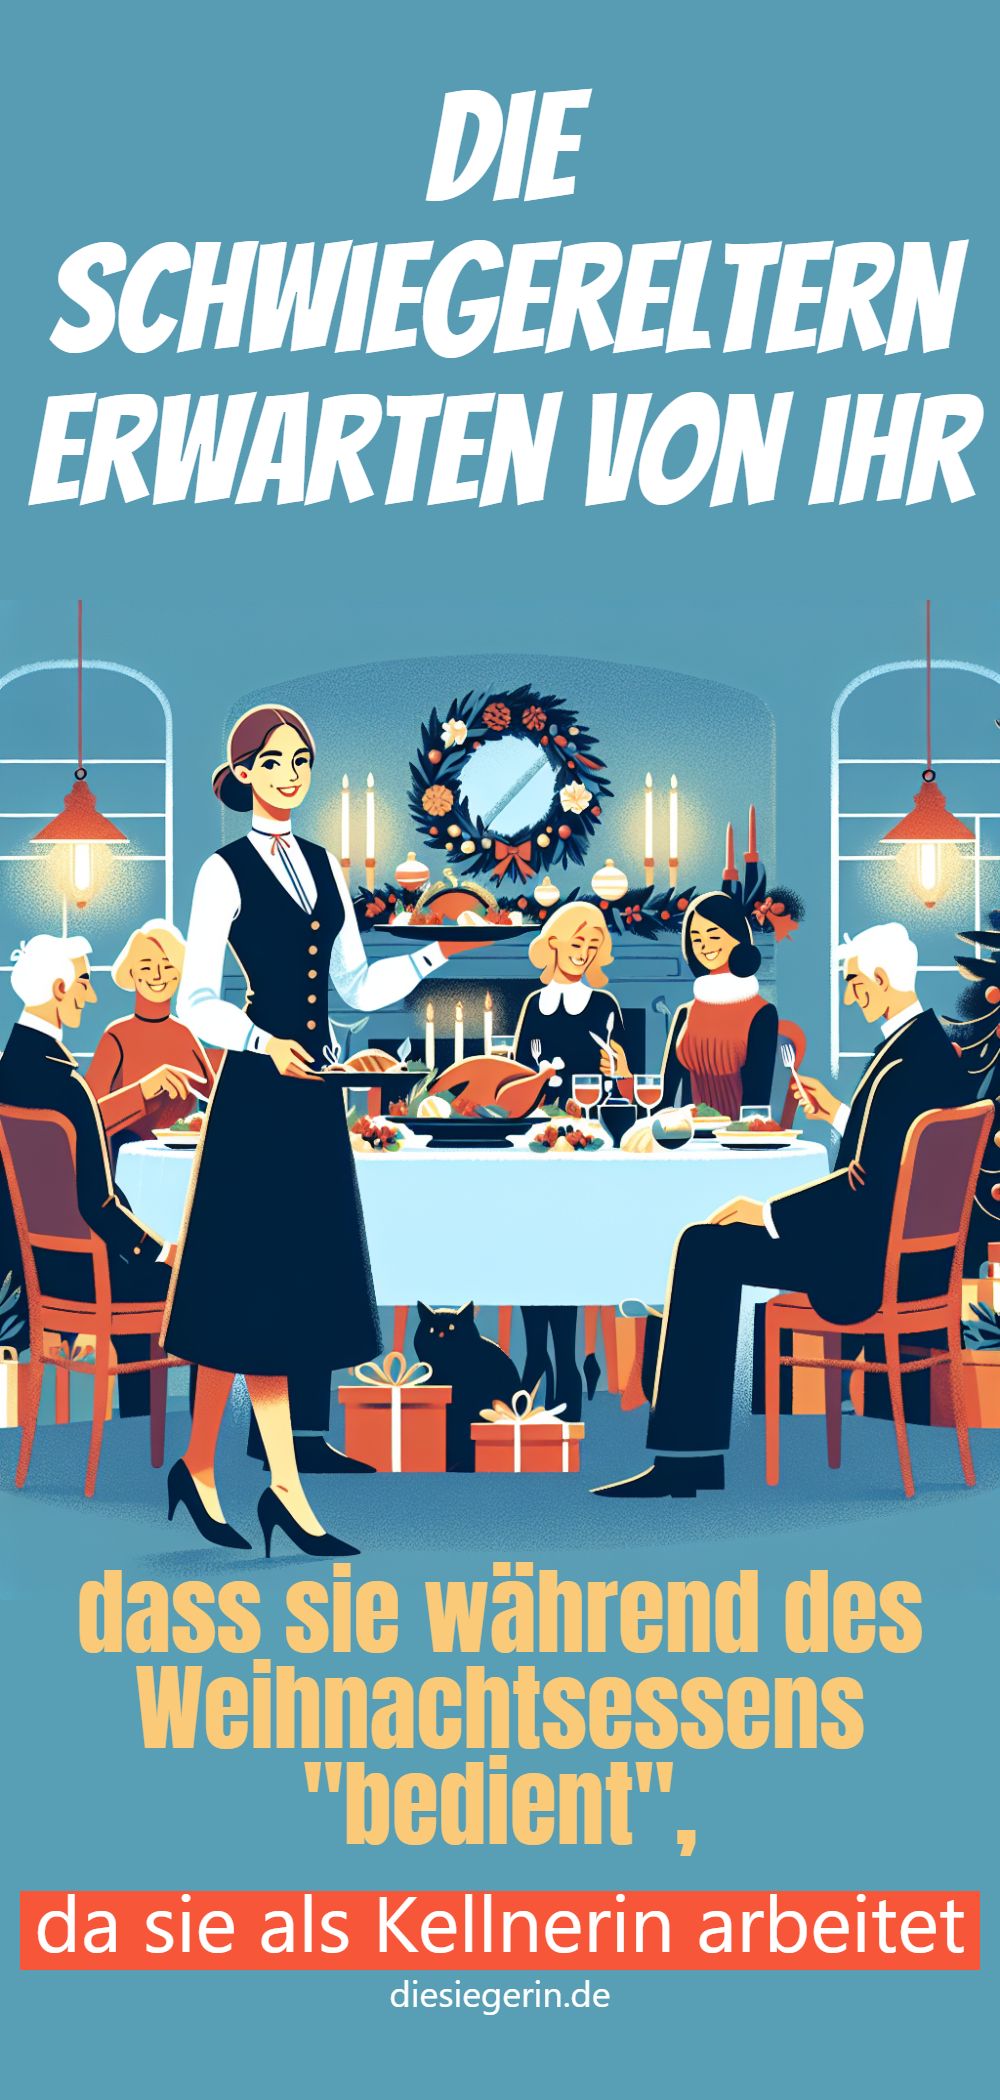 Die Schwiegereltern erwarten von ihr dass sie während des Weihnachtsessens "bedient", da sie als Kellnerin arbeitet